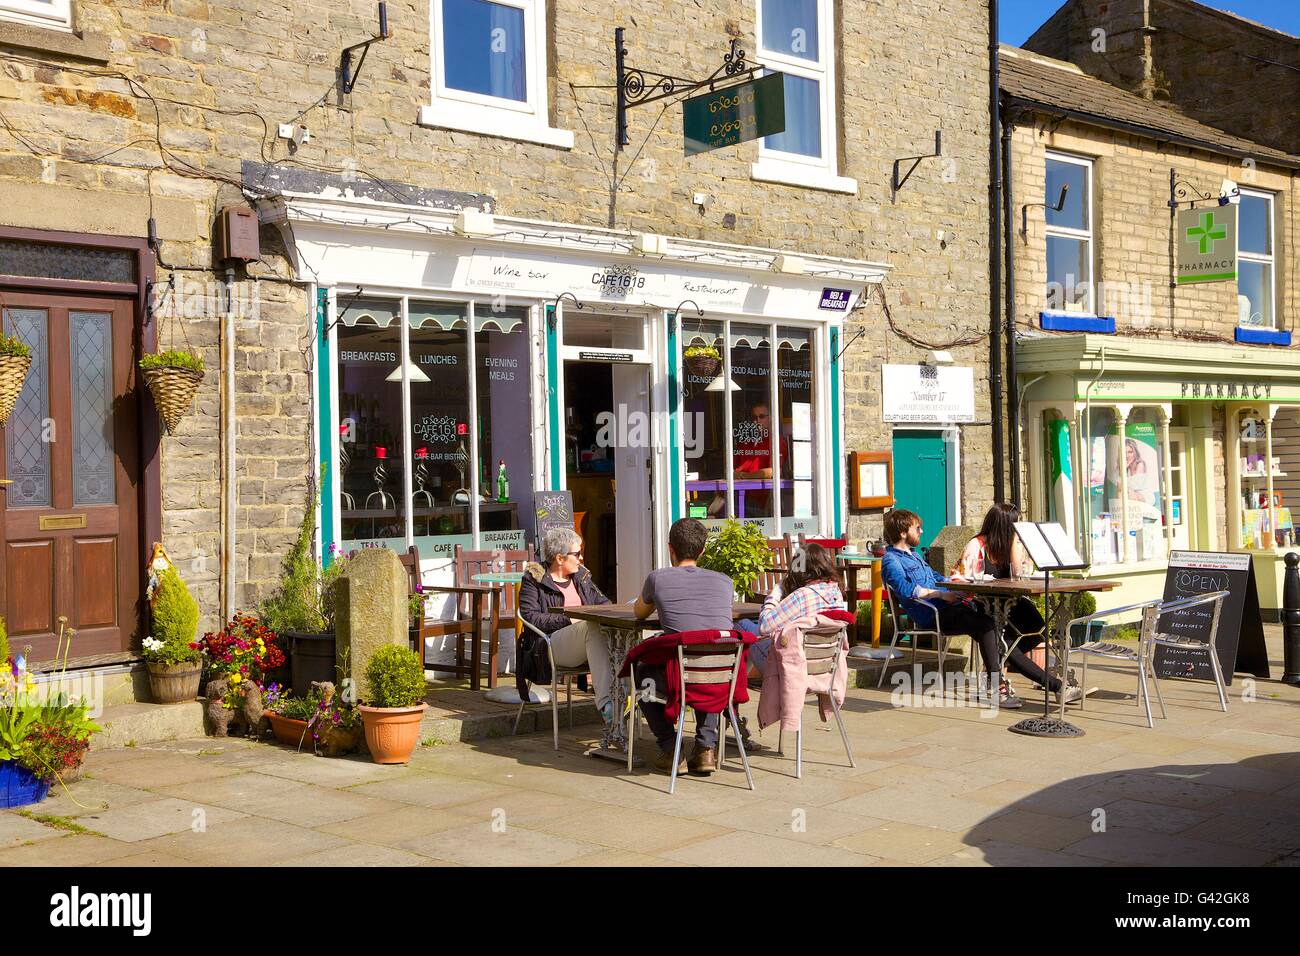 Menschen außerhalb Cafe sitzen. Cafe1618, 16 Marktplatz, Middleton-in-Teesdale, County Durham, England, Vereinigtes Königreich, Europa. Stockfoto